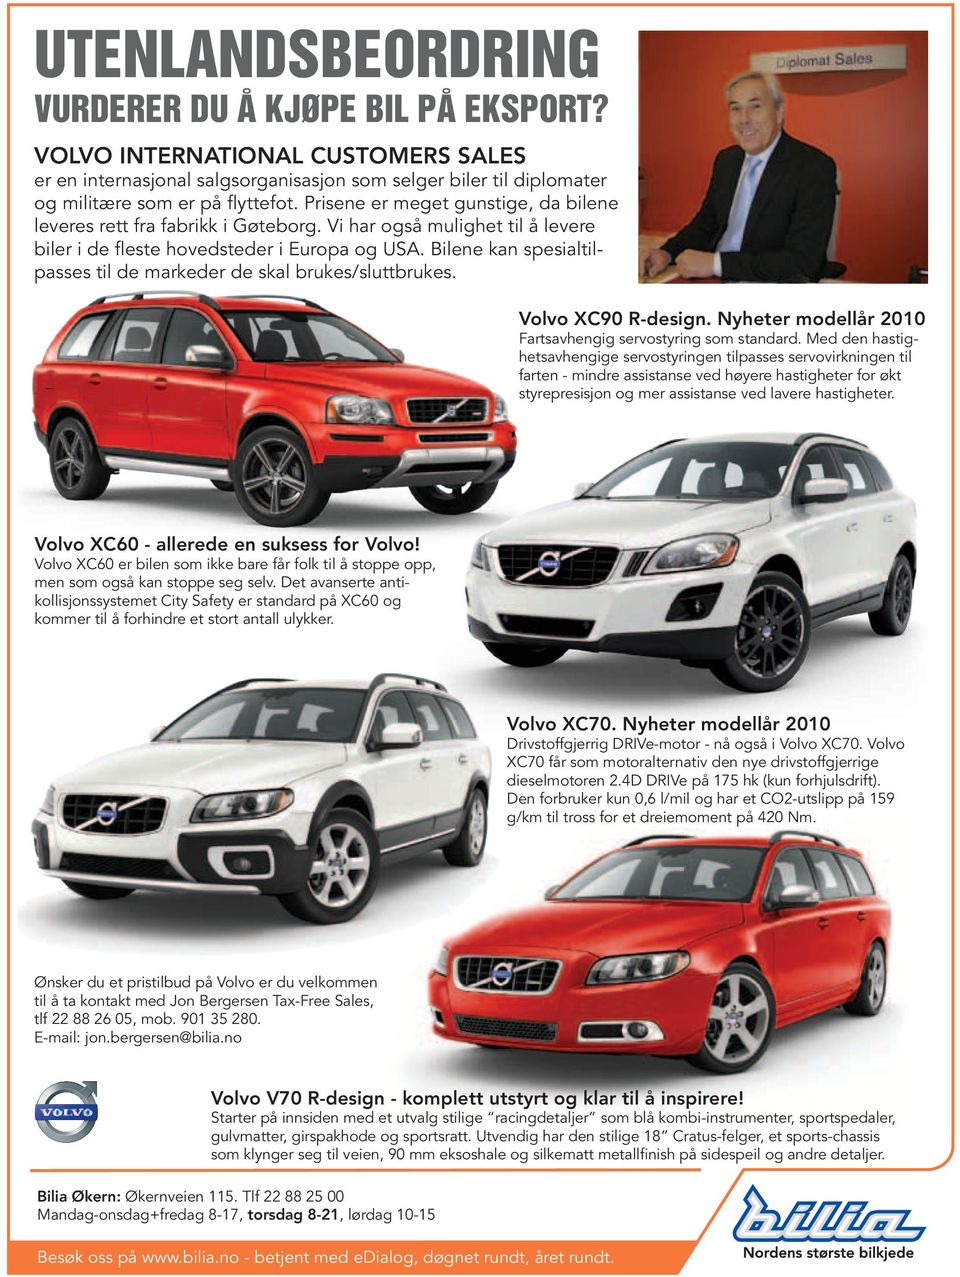 Bilene kan spesialtilpasses til de markeder de skal brukes/sluttbrukes. Volvo XC90 R-design. Nyheter modellår 2010 Fartsavhengig servostyring som standard.